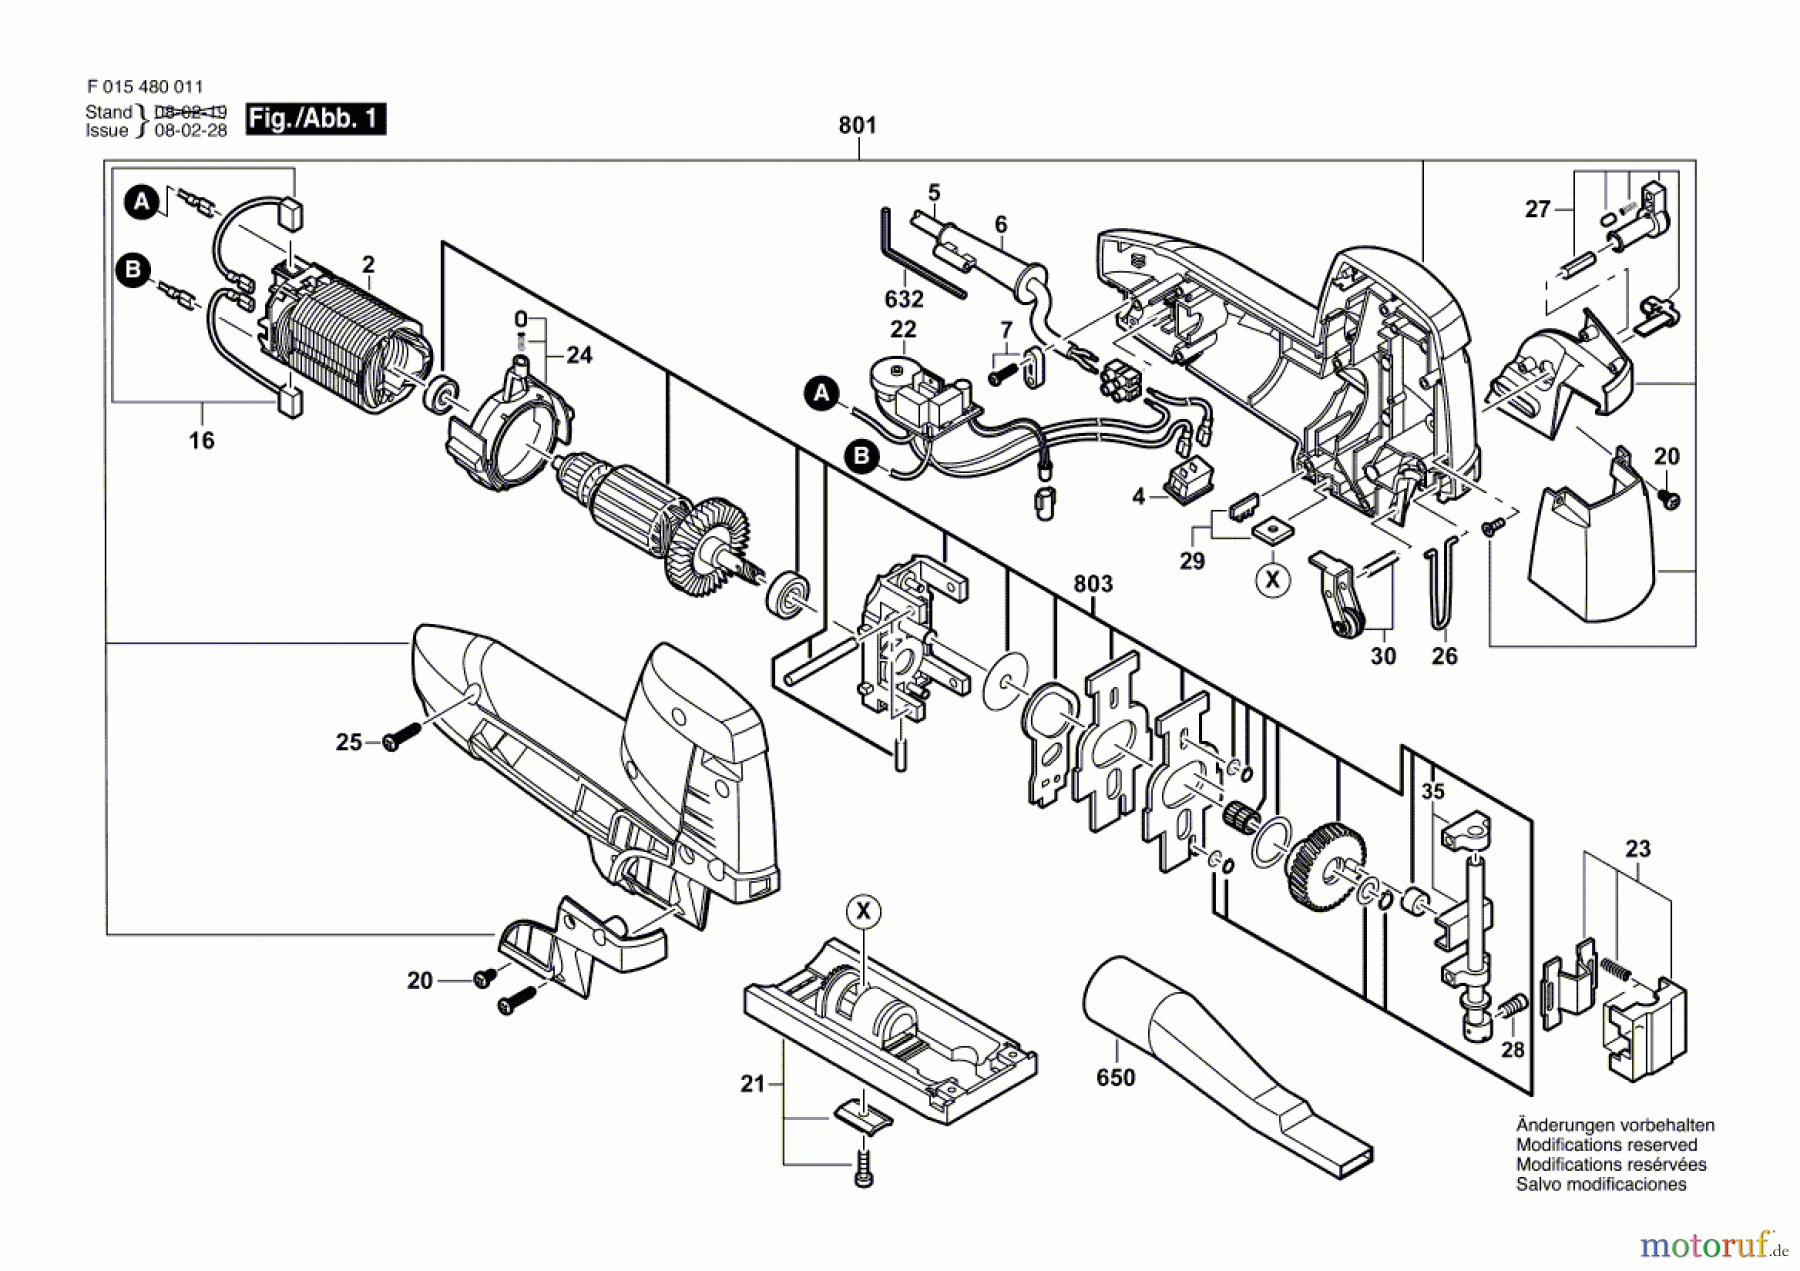  Bosch Werkzeug Stichsäge 4800 Seite 1